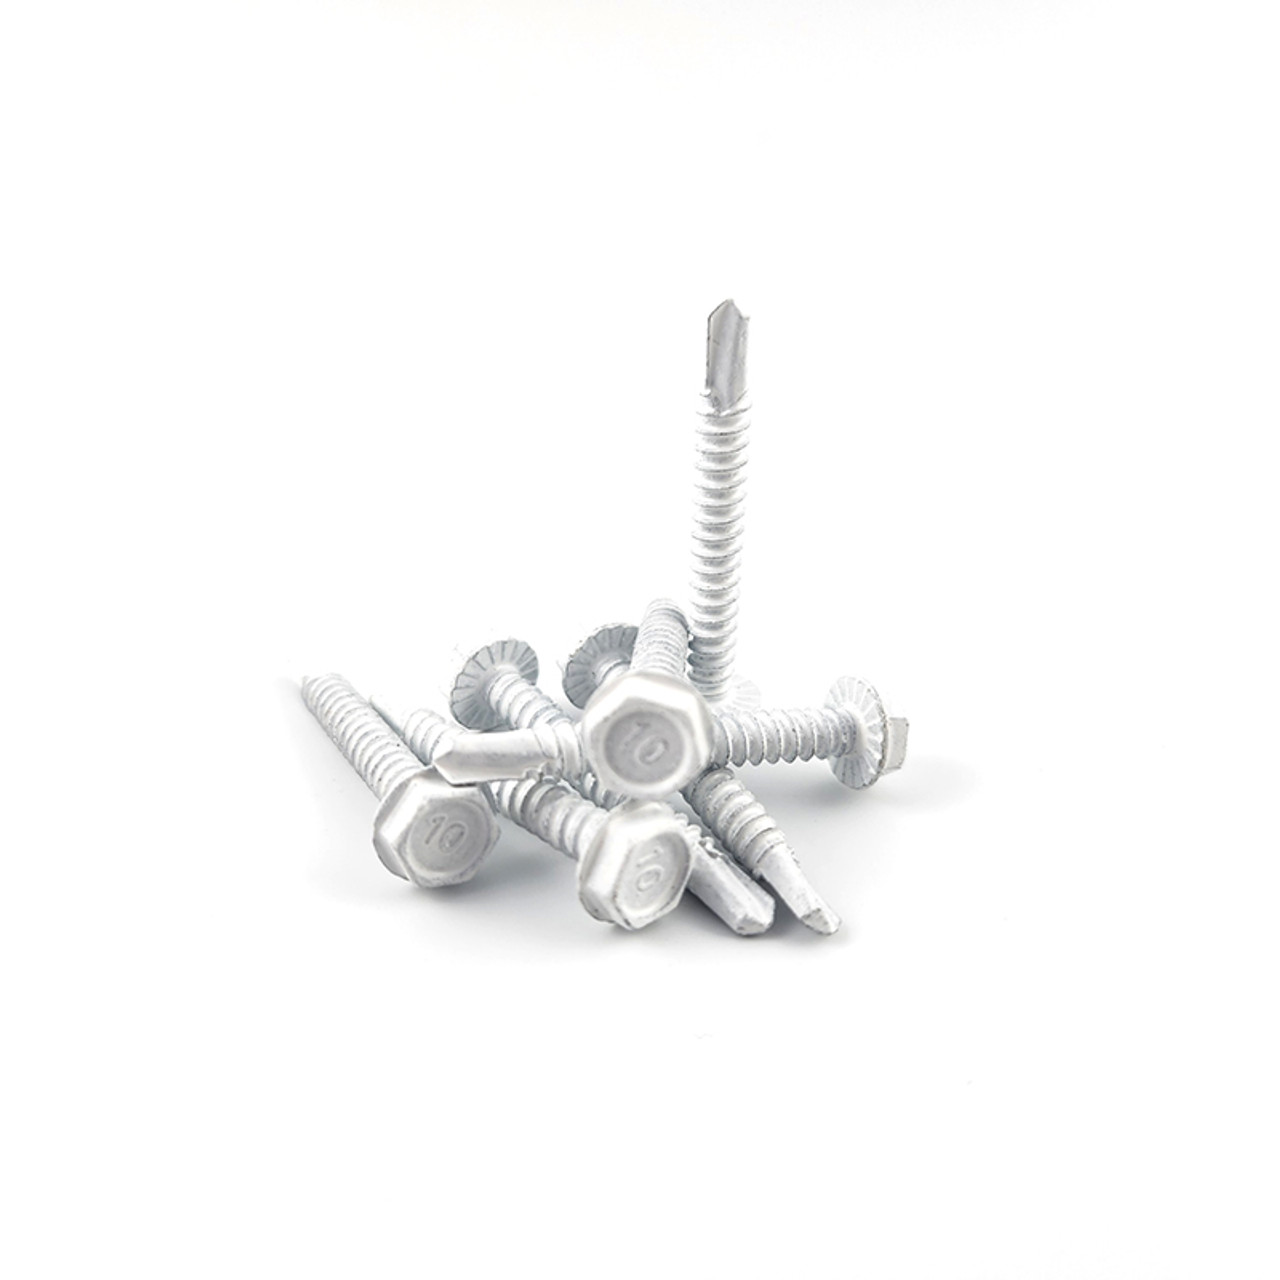 Self drilling screws  #10 (5/16 head) 100 ctn